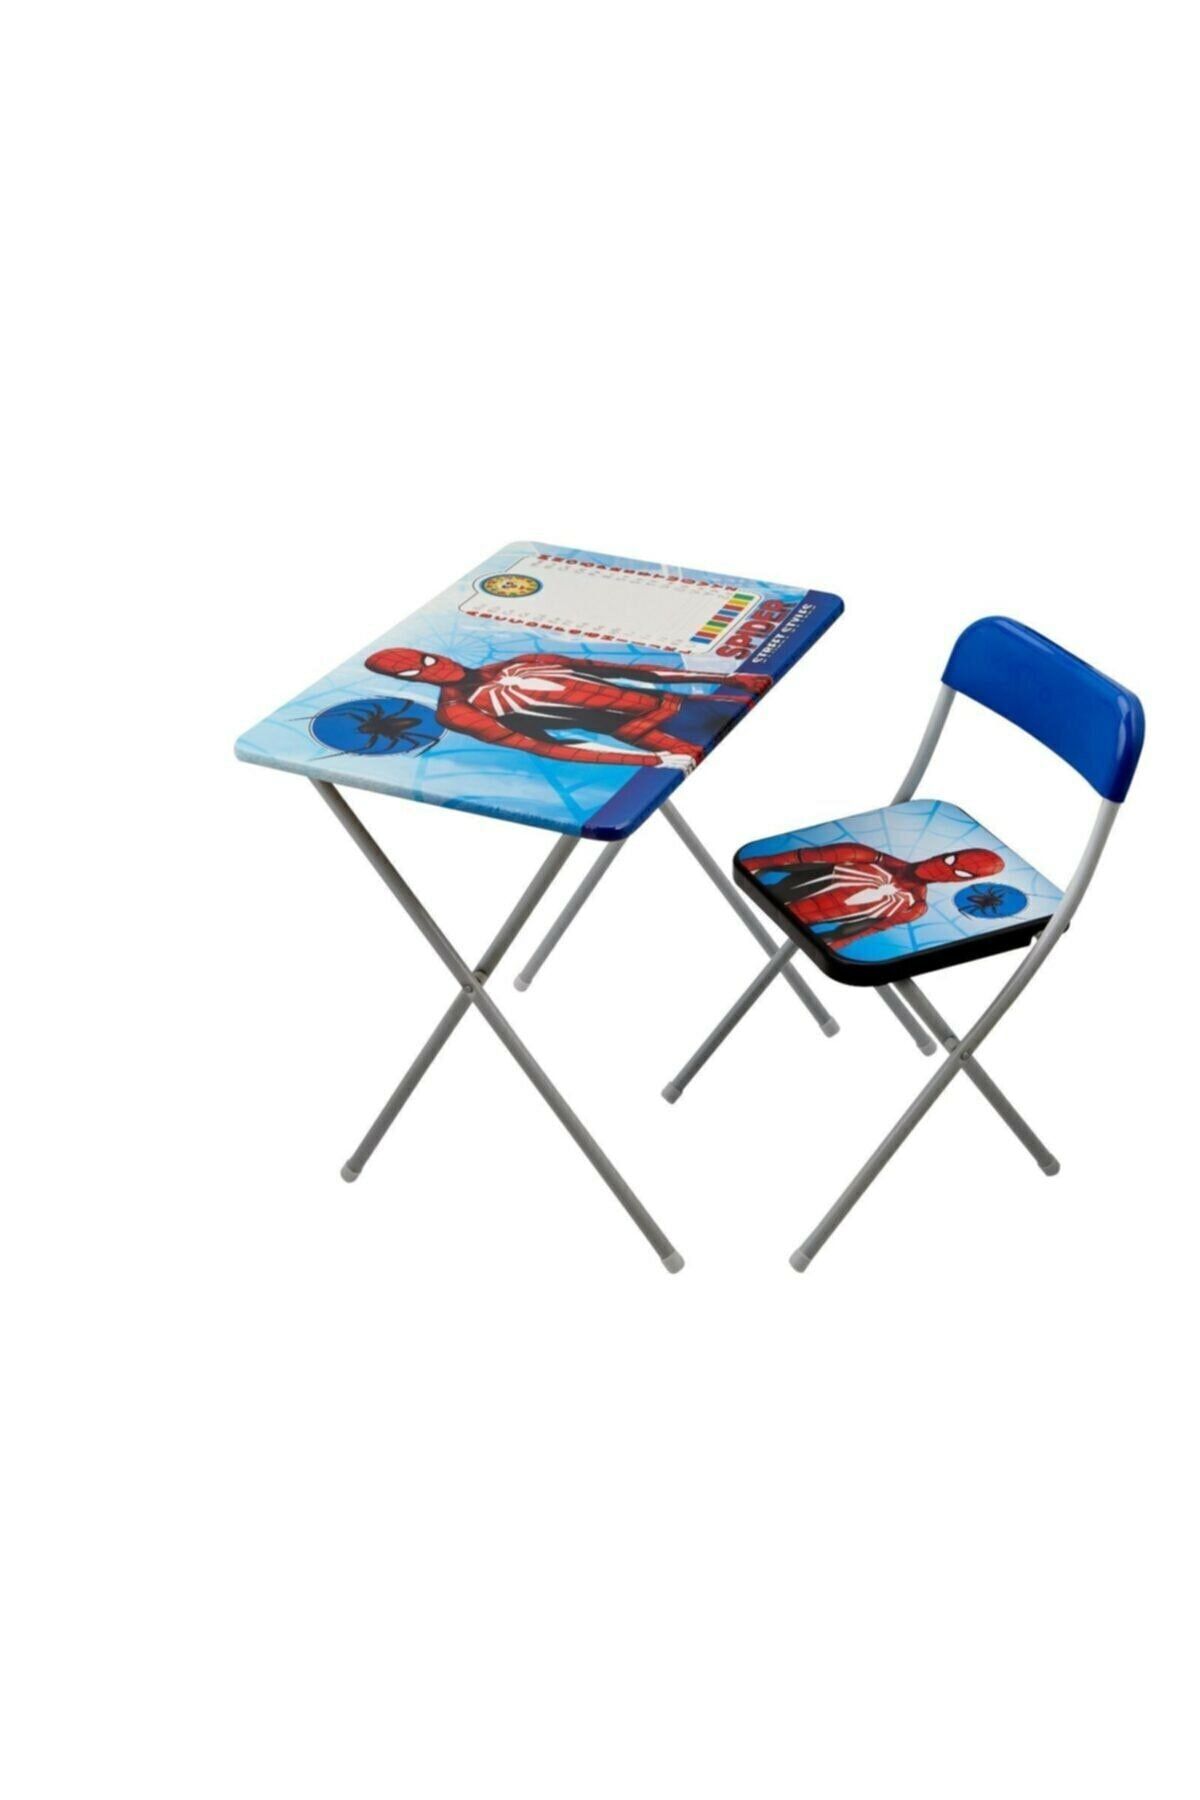 Beren Oyuncak Spider Ders Çalışma Masası. Erkek Çocuk Oyun Aktivite Masa Sandalye Seti